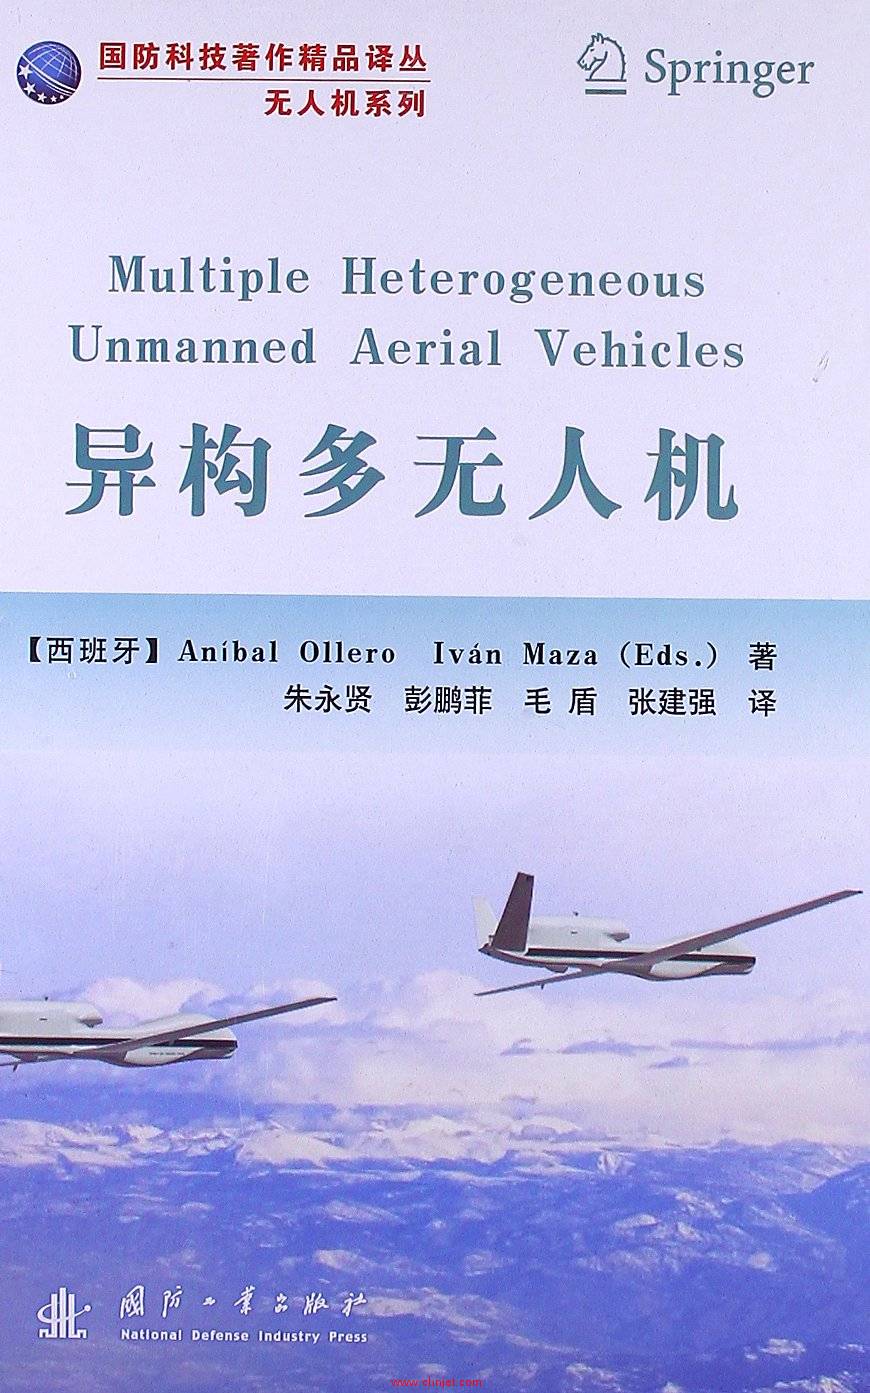 《Multiple Heterogeneous Unmanned Aerial Vehicles》